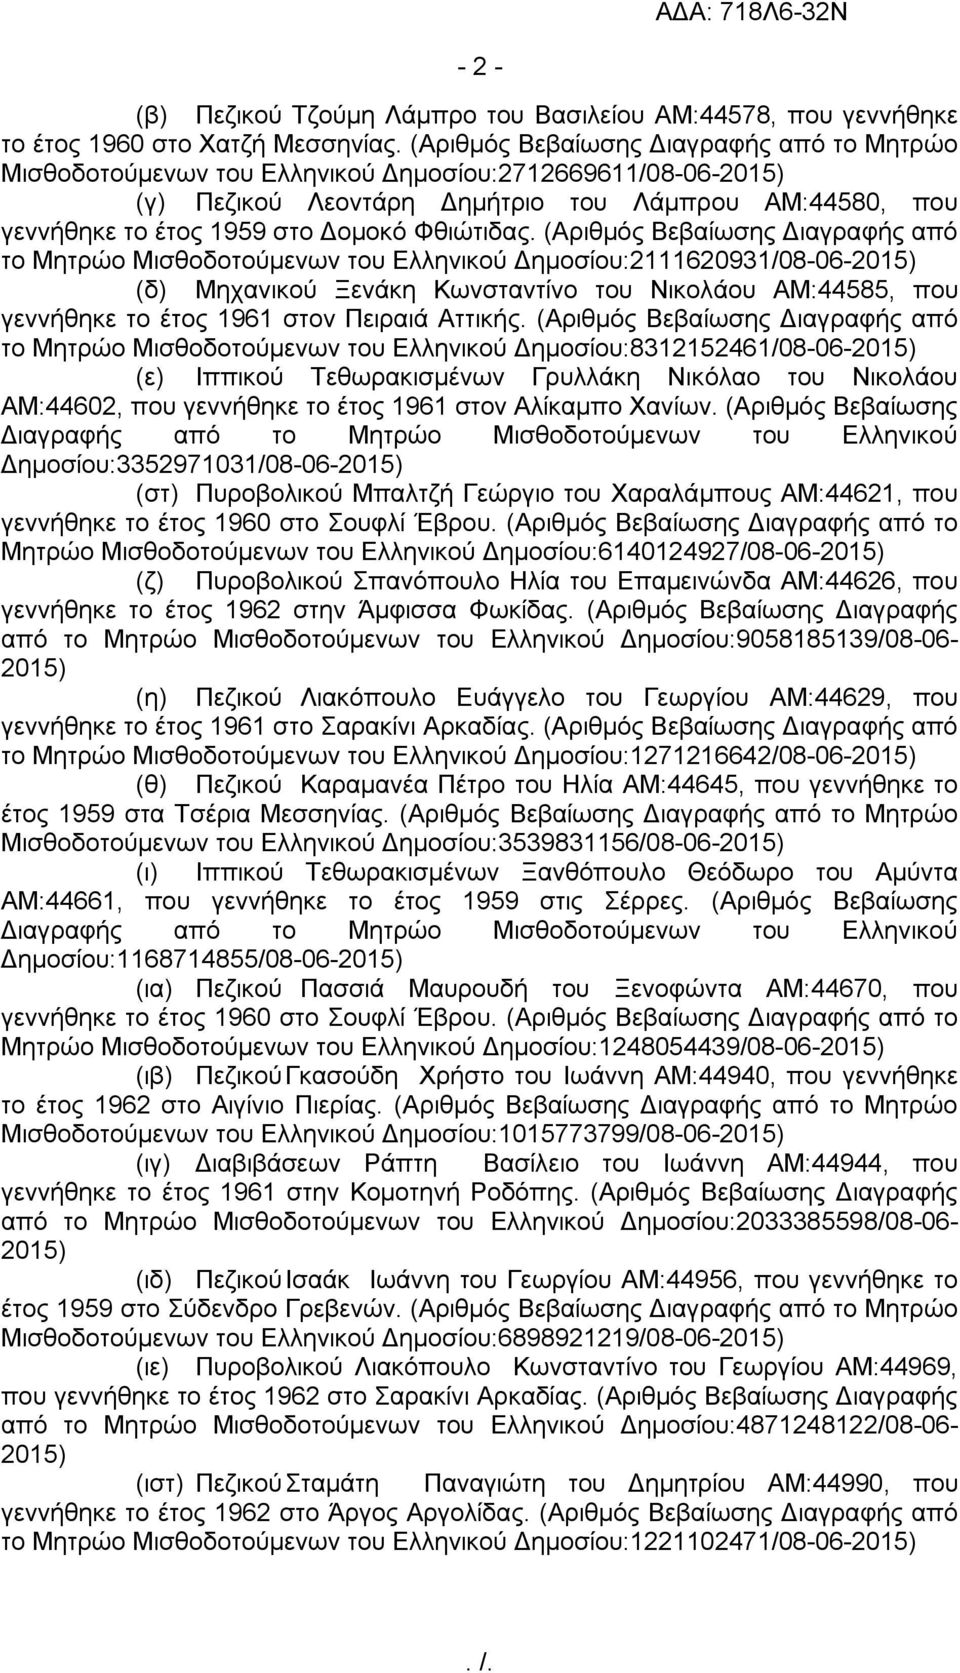 (Αριθμός Βεβαίωσης Διαγραφής από το Μητρώο Μισθοδοτούμενων του Ελληνικού Δημοσίου:2111620931/08-06- (δ) Μηχανικού Ξενάκη Κωνσταντίνο του Νικολάου ΑΜ:44585, που γεννήθηκε το έτος 1961 στον Πειραιά